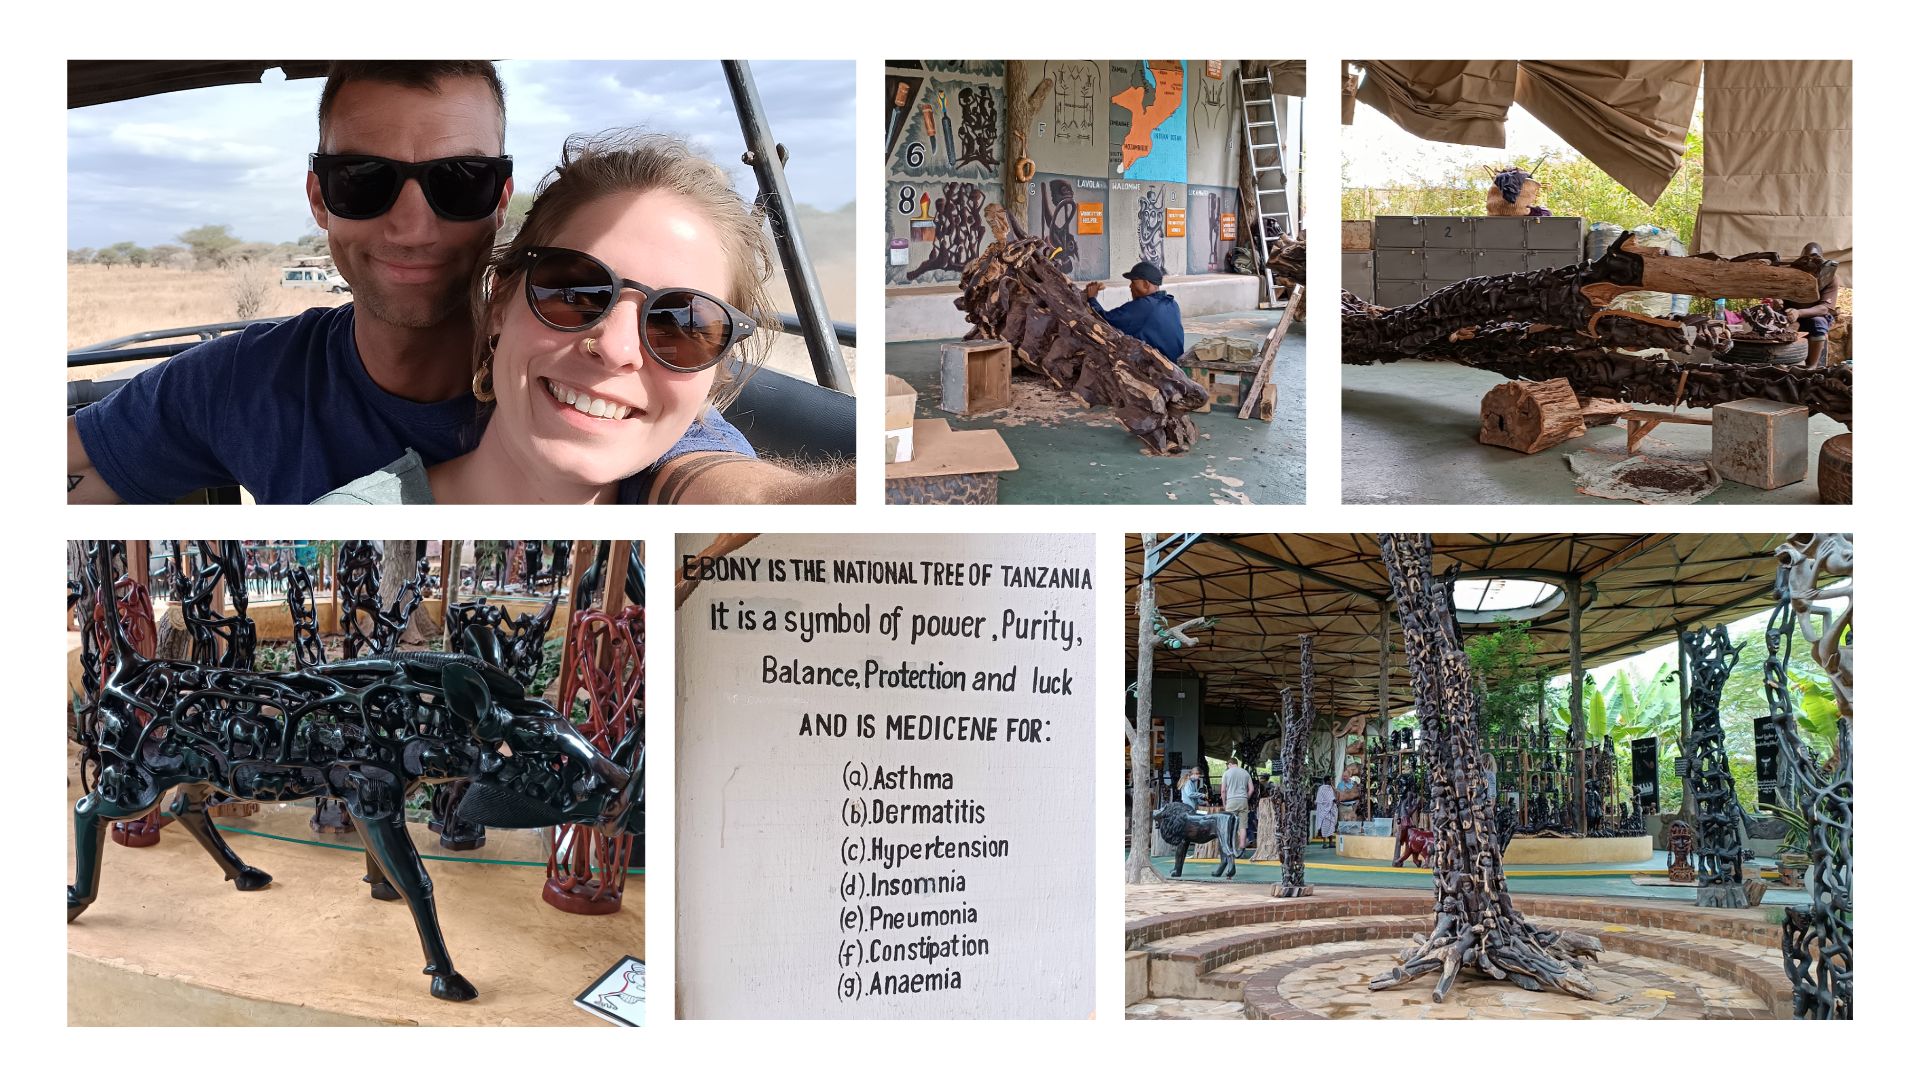 WOODEN SHADE | Sunglasses | Afrika Tansania Journey | Ebony Wood Museum 2022